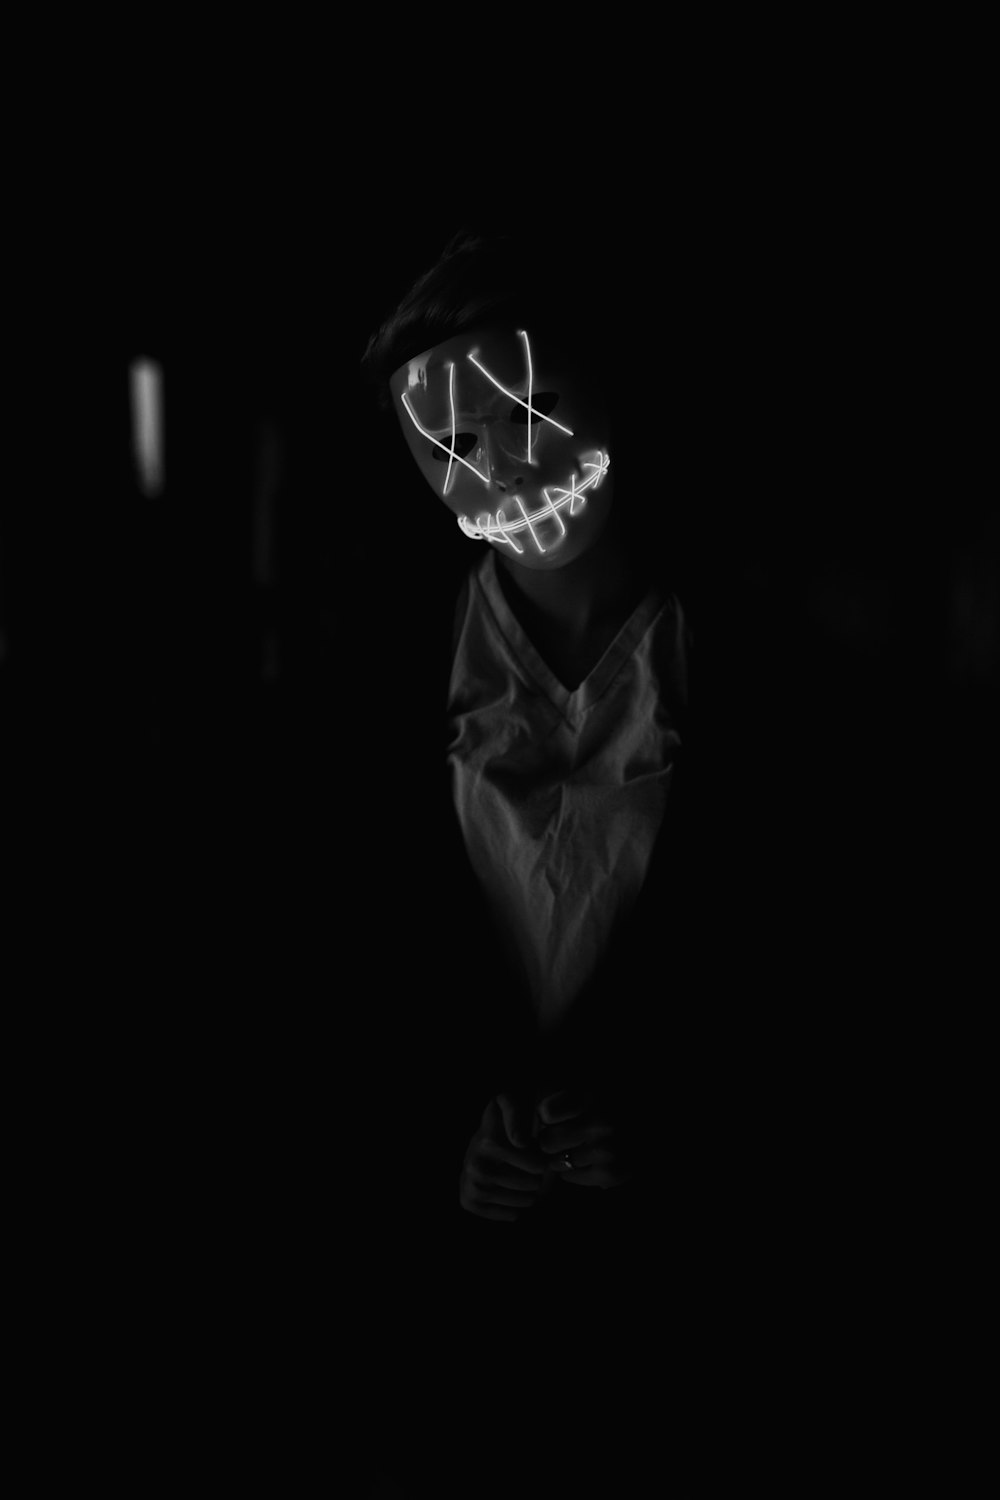 マスクを着用している人の白黒写真